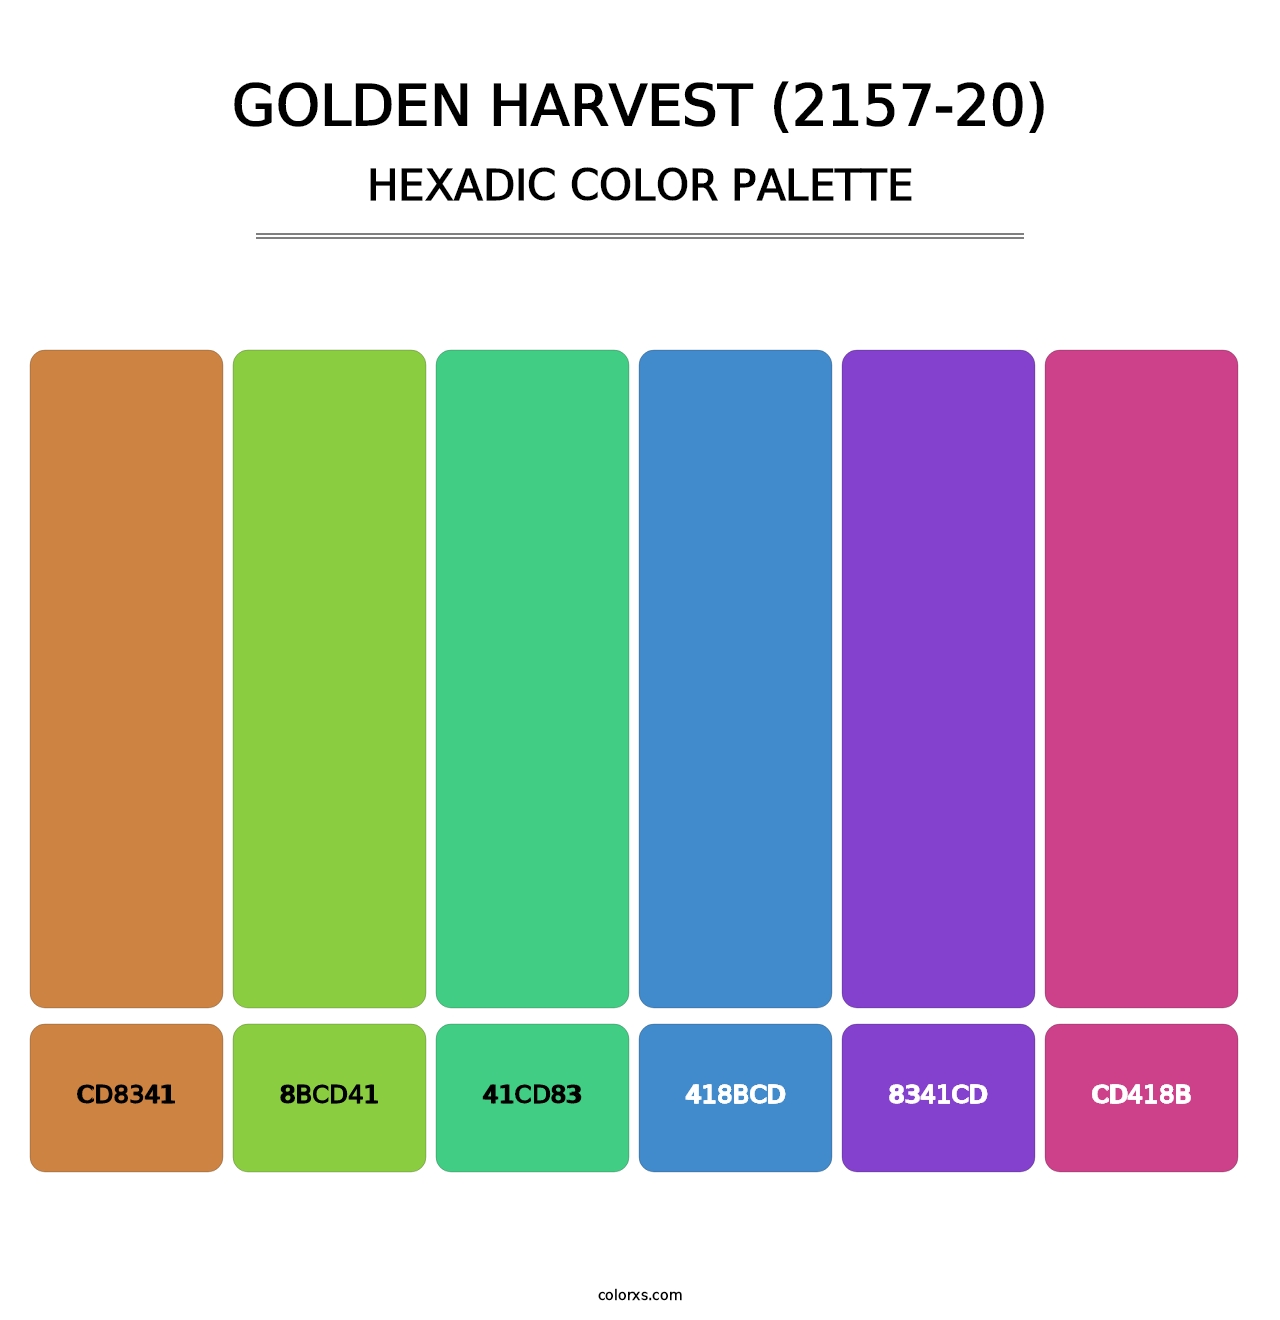 Golden Harvest (2157-20) - Hexadic Color Palette